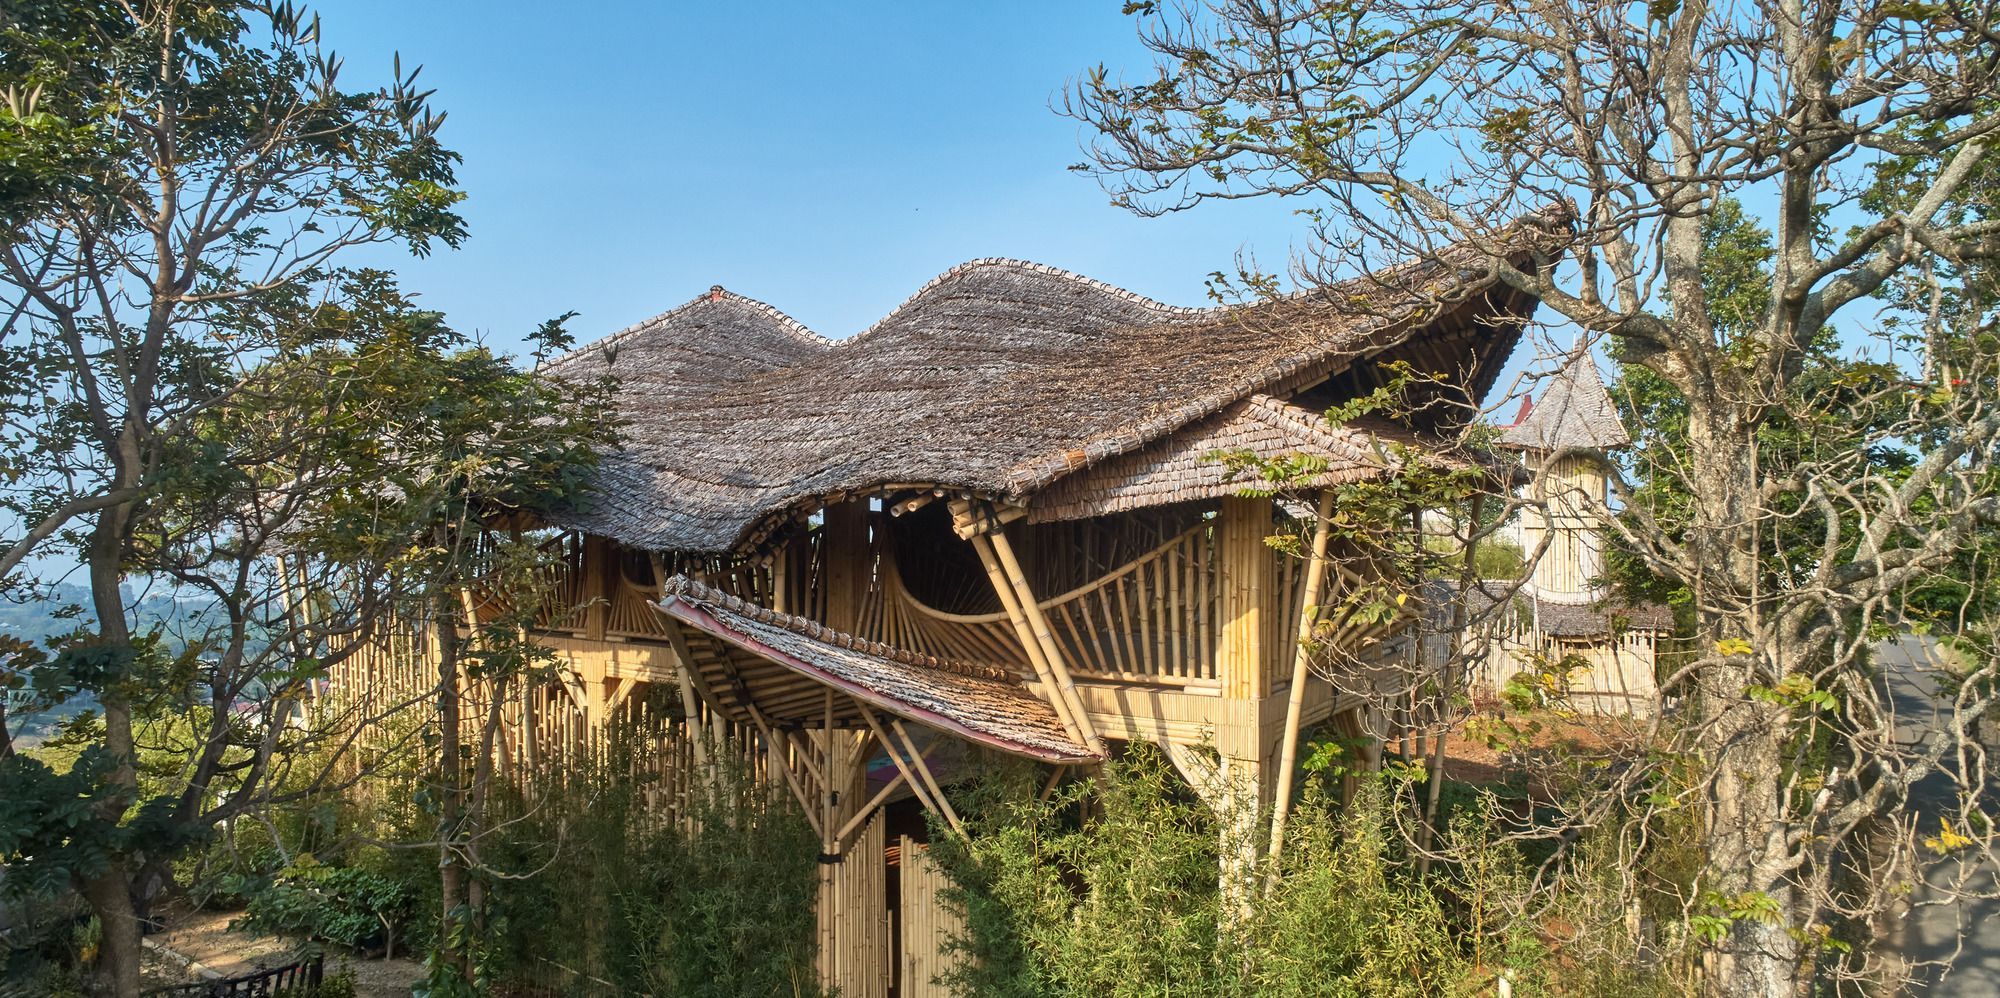 Эко на основе бамбука: в Индонезии представили роскошный вариант сельской резиденции